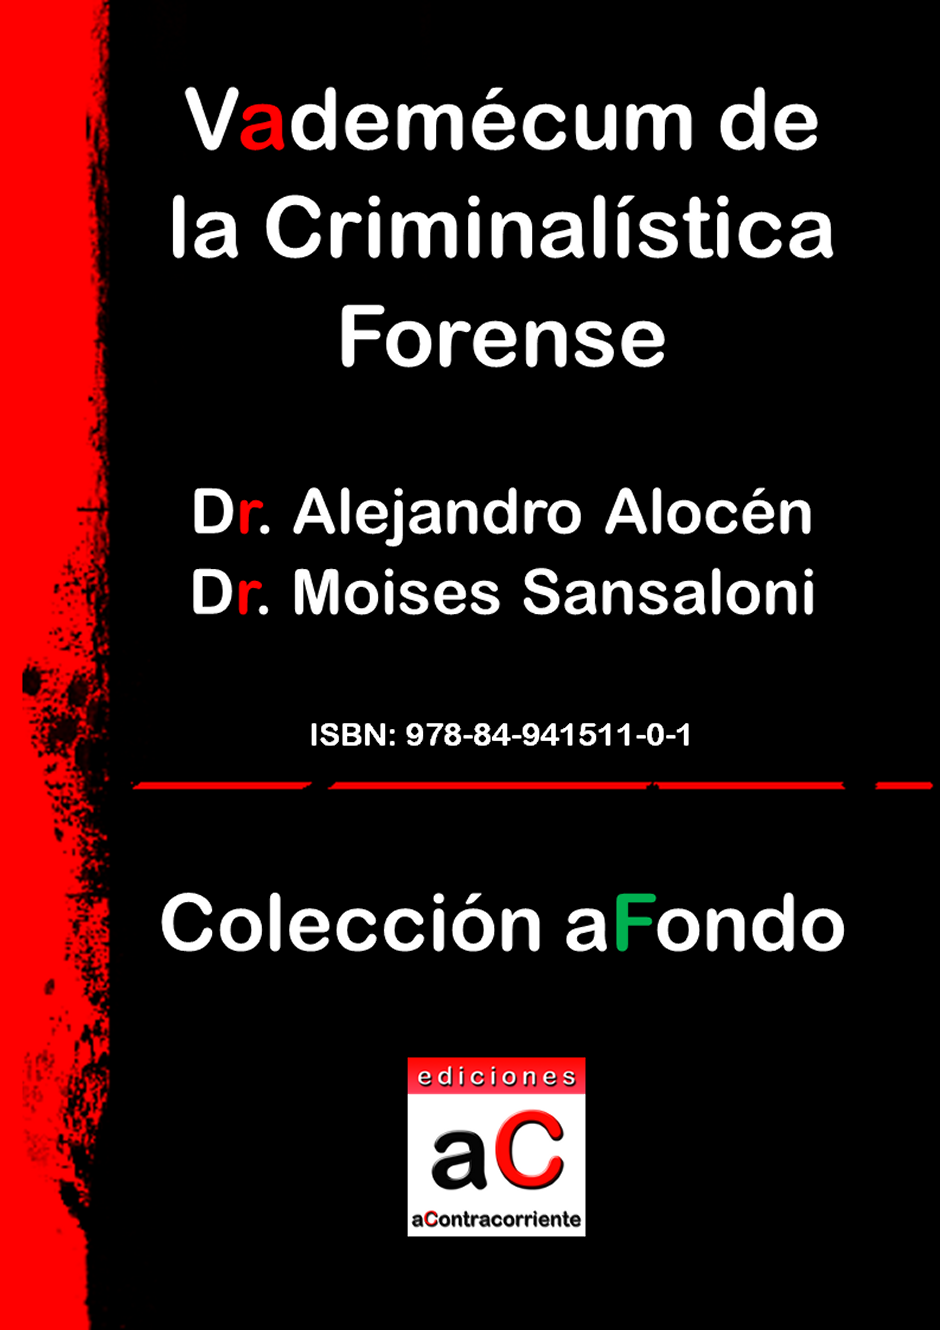 Vademcum de la criminalstica forense, Ediciones aContracorriente